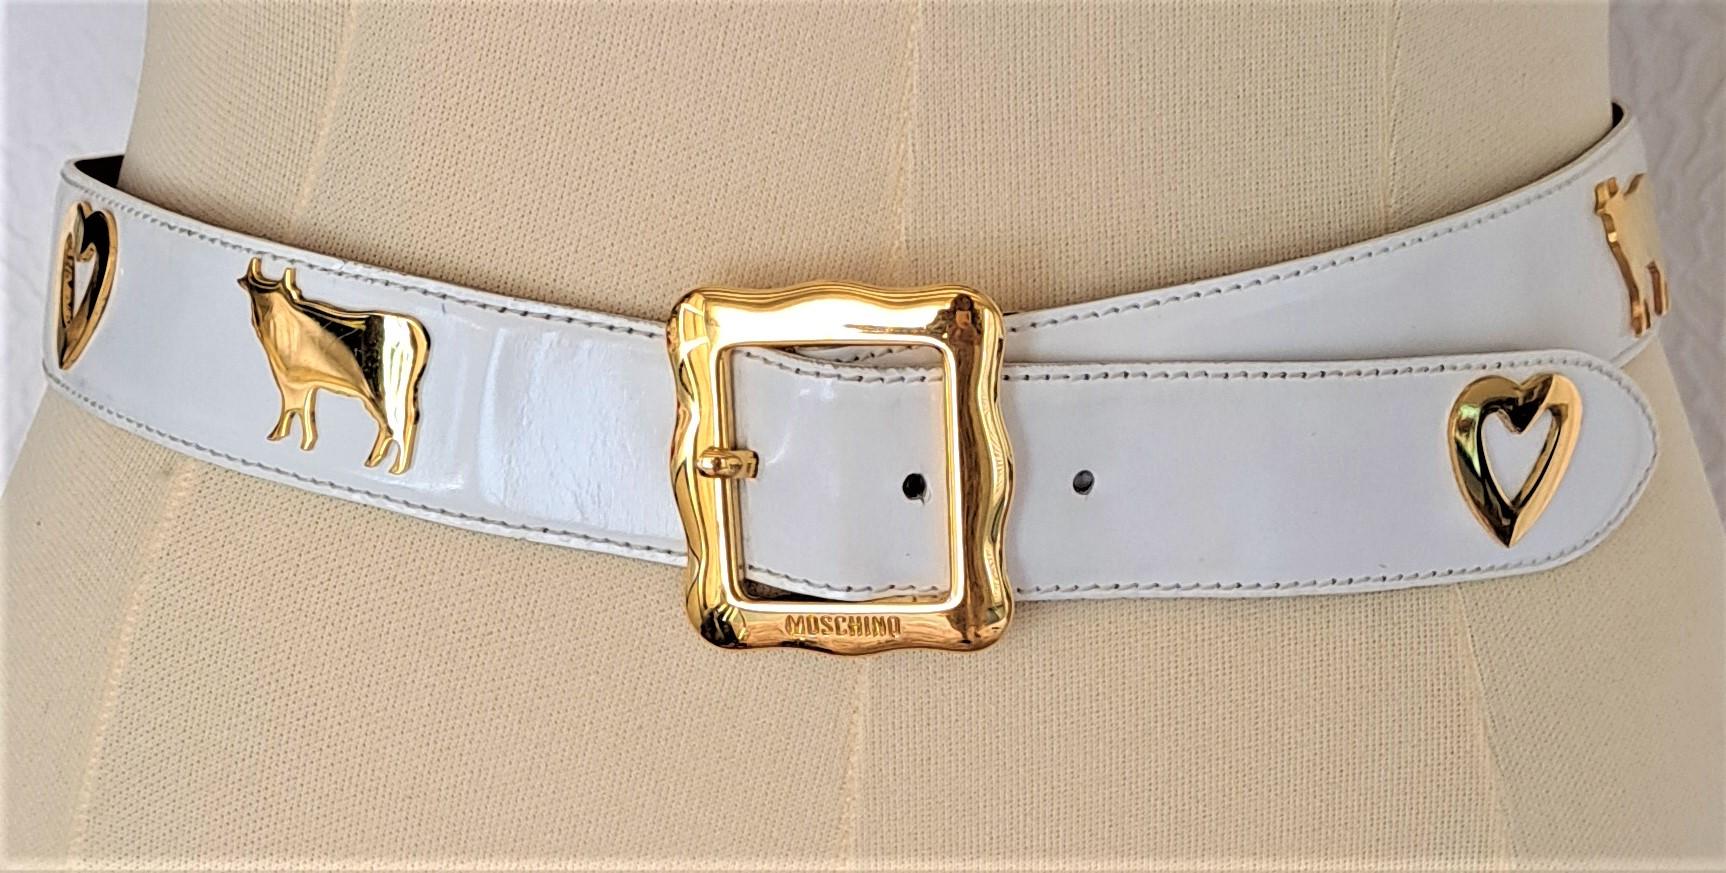 Cette magnifique ceinture Vintage Moschino by Redwall 1987 (elle n'est plus produite, c'est donc un objet de collection) est un accessoire de mode créé par la marque de luxe italienne Moschino. Moschino est connu pour ses designs audacieux et